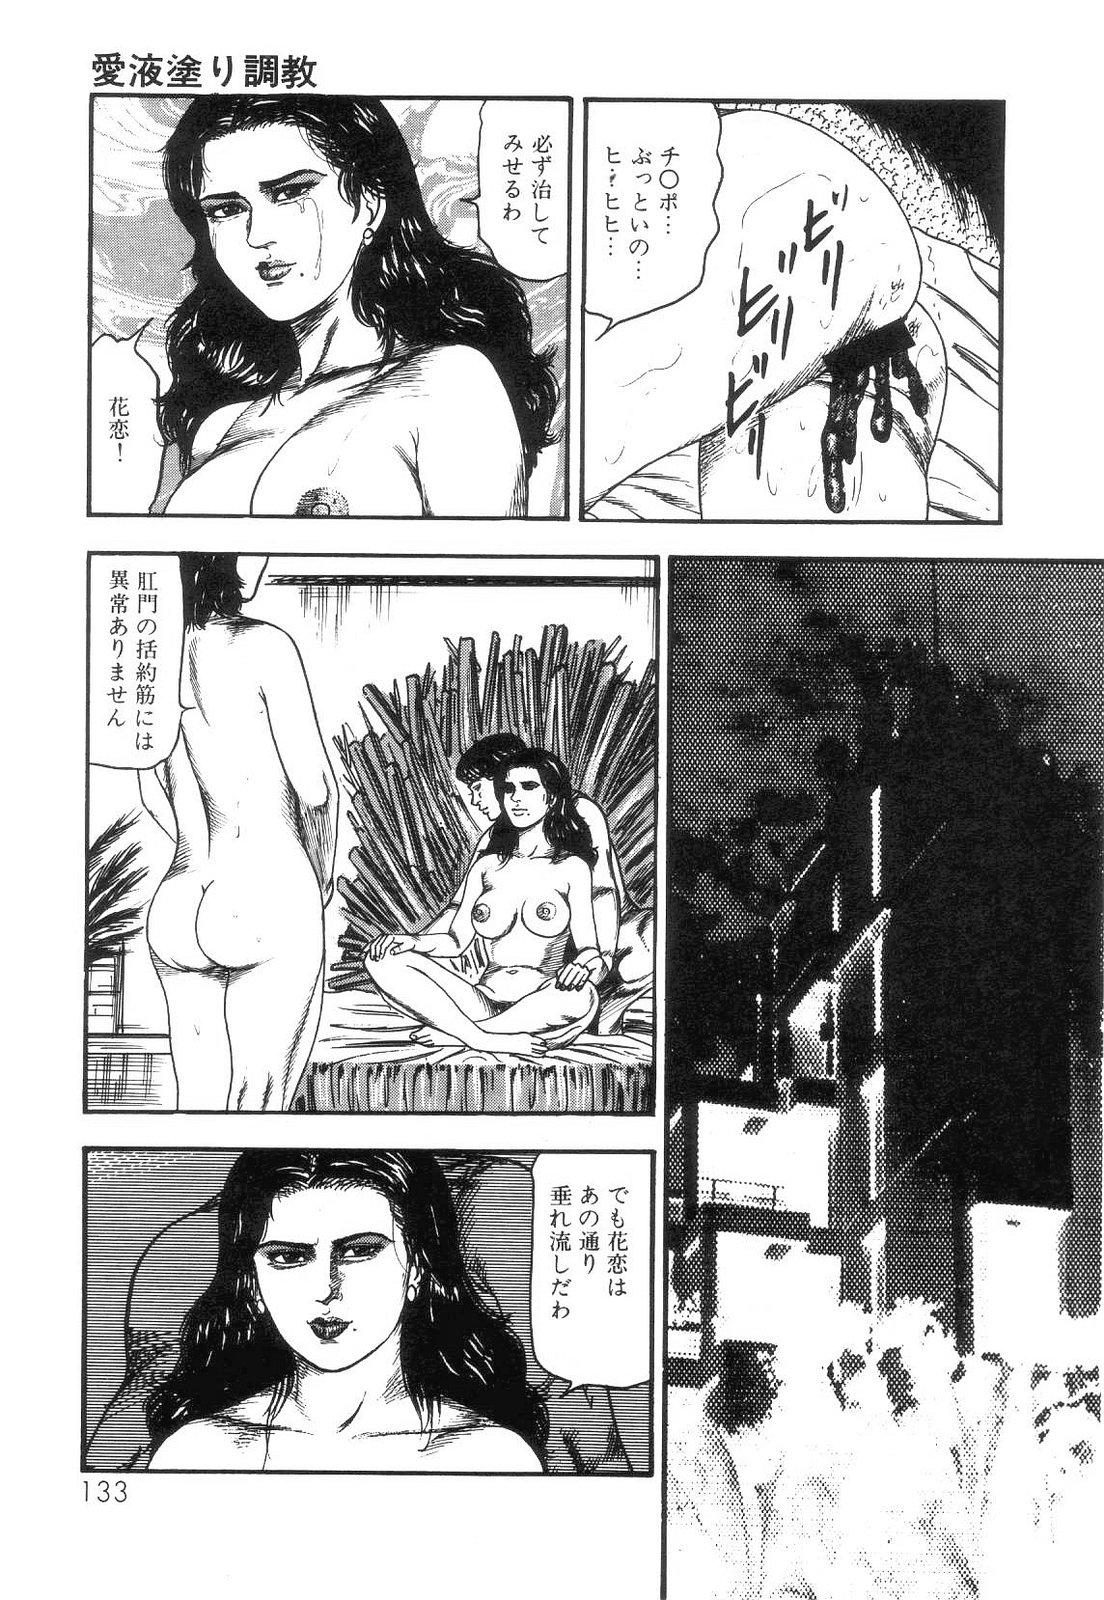 Shiro no Mokushiroku Vol. 4 - Bichiku Karen no Shou 134